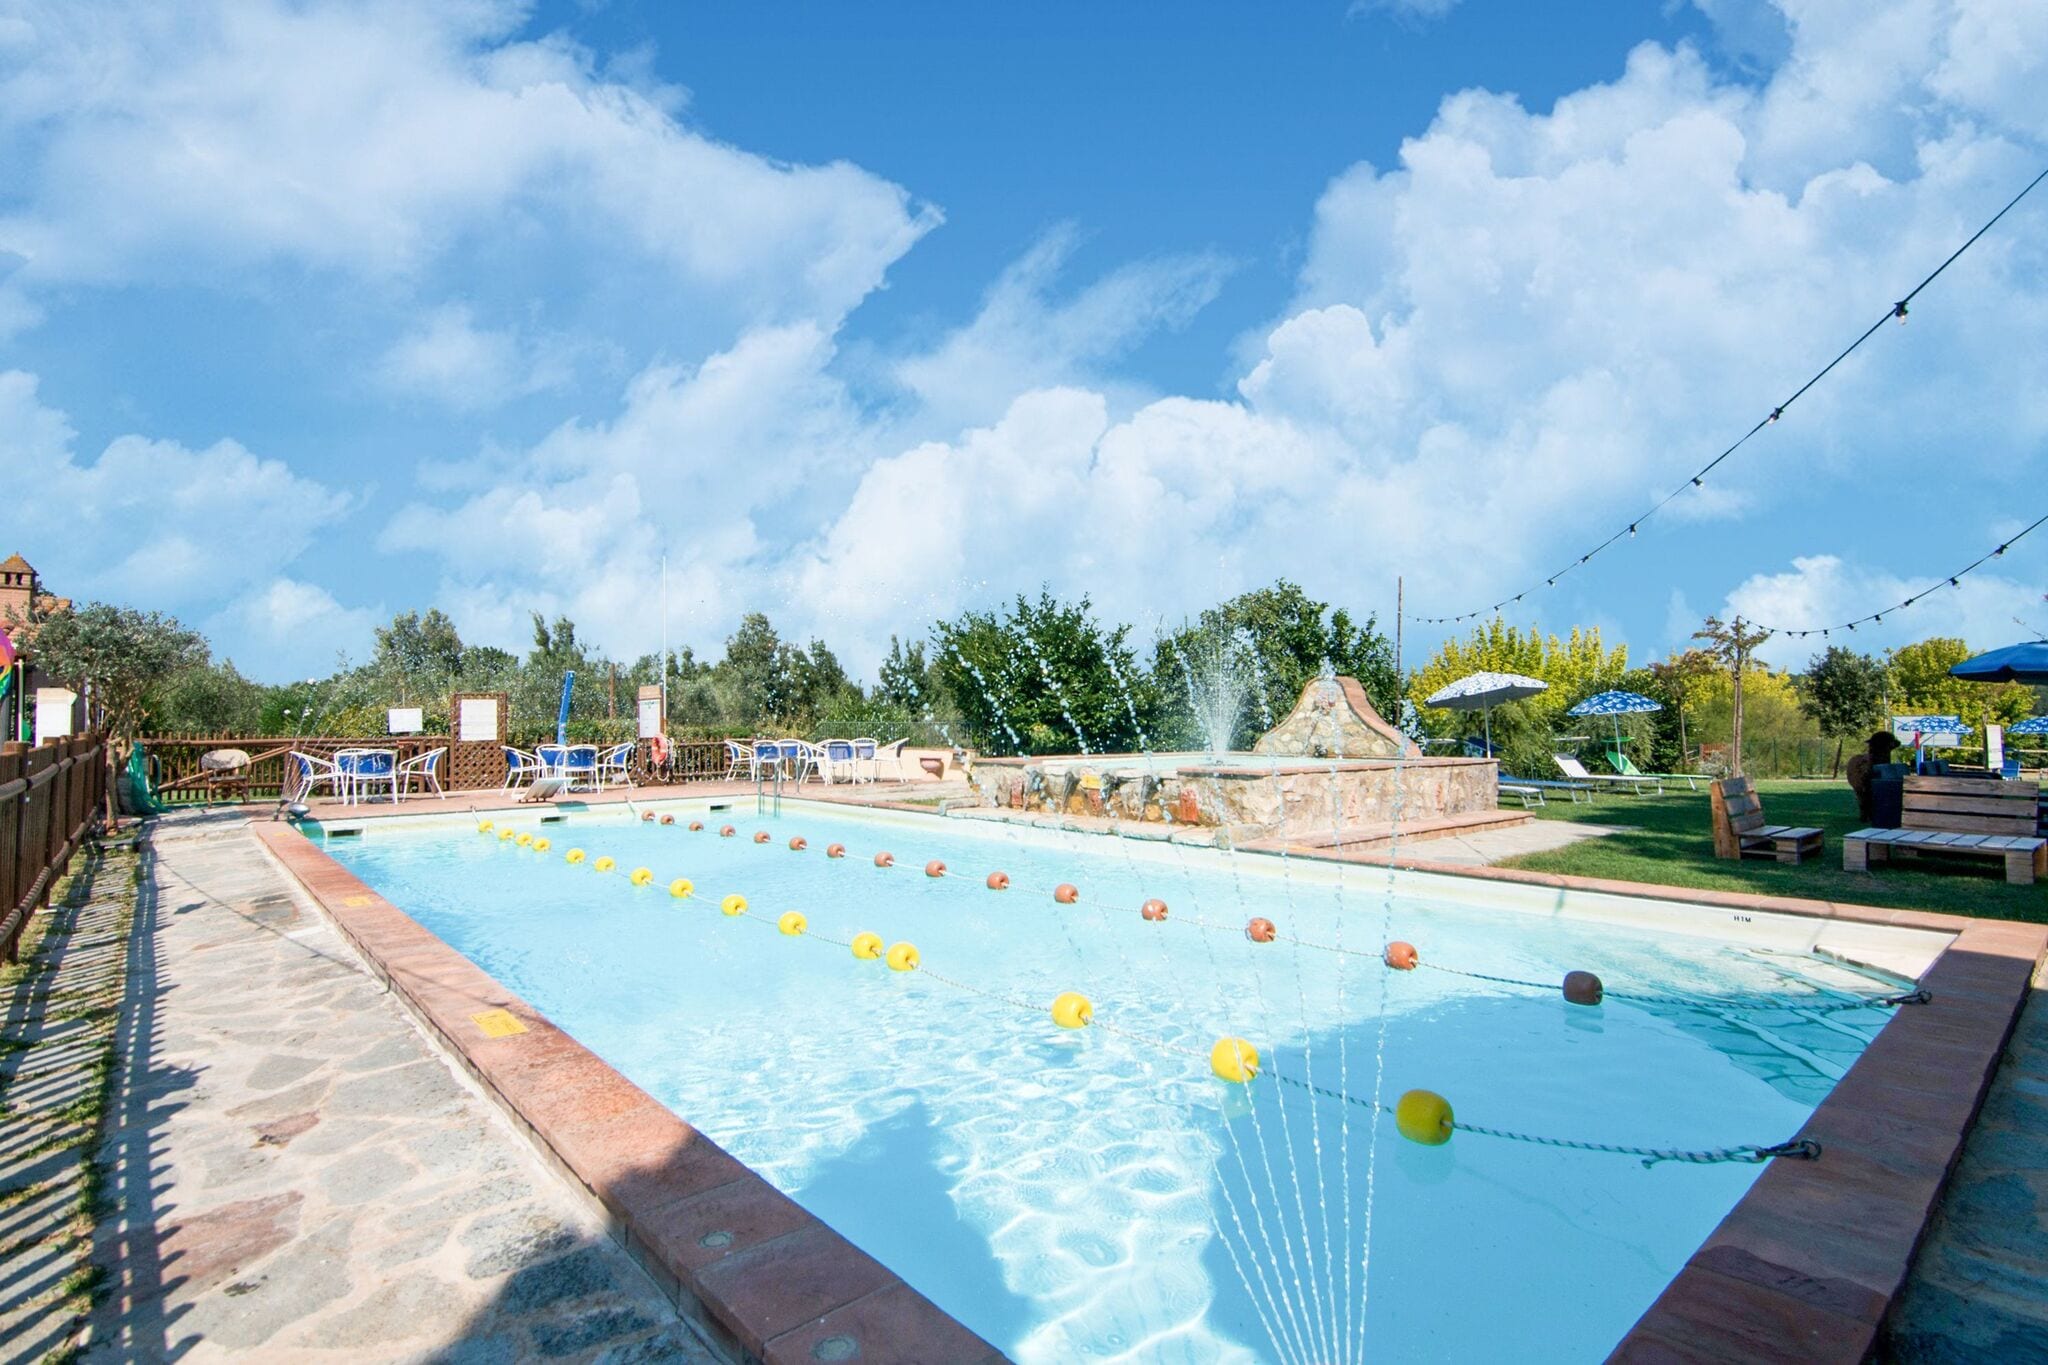 Vakantie huis dichtbij het Trasimeno meer, twee zwembaden en wellness ruimte